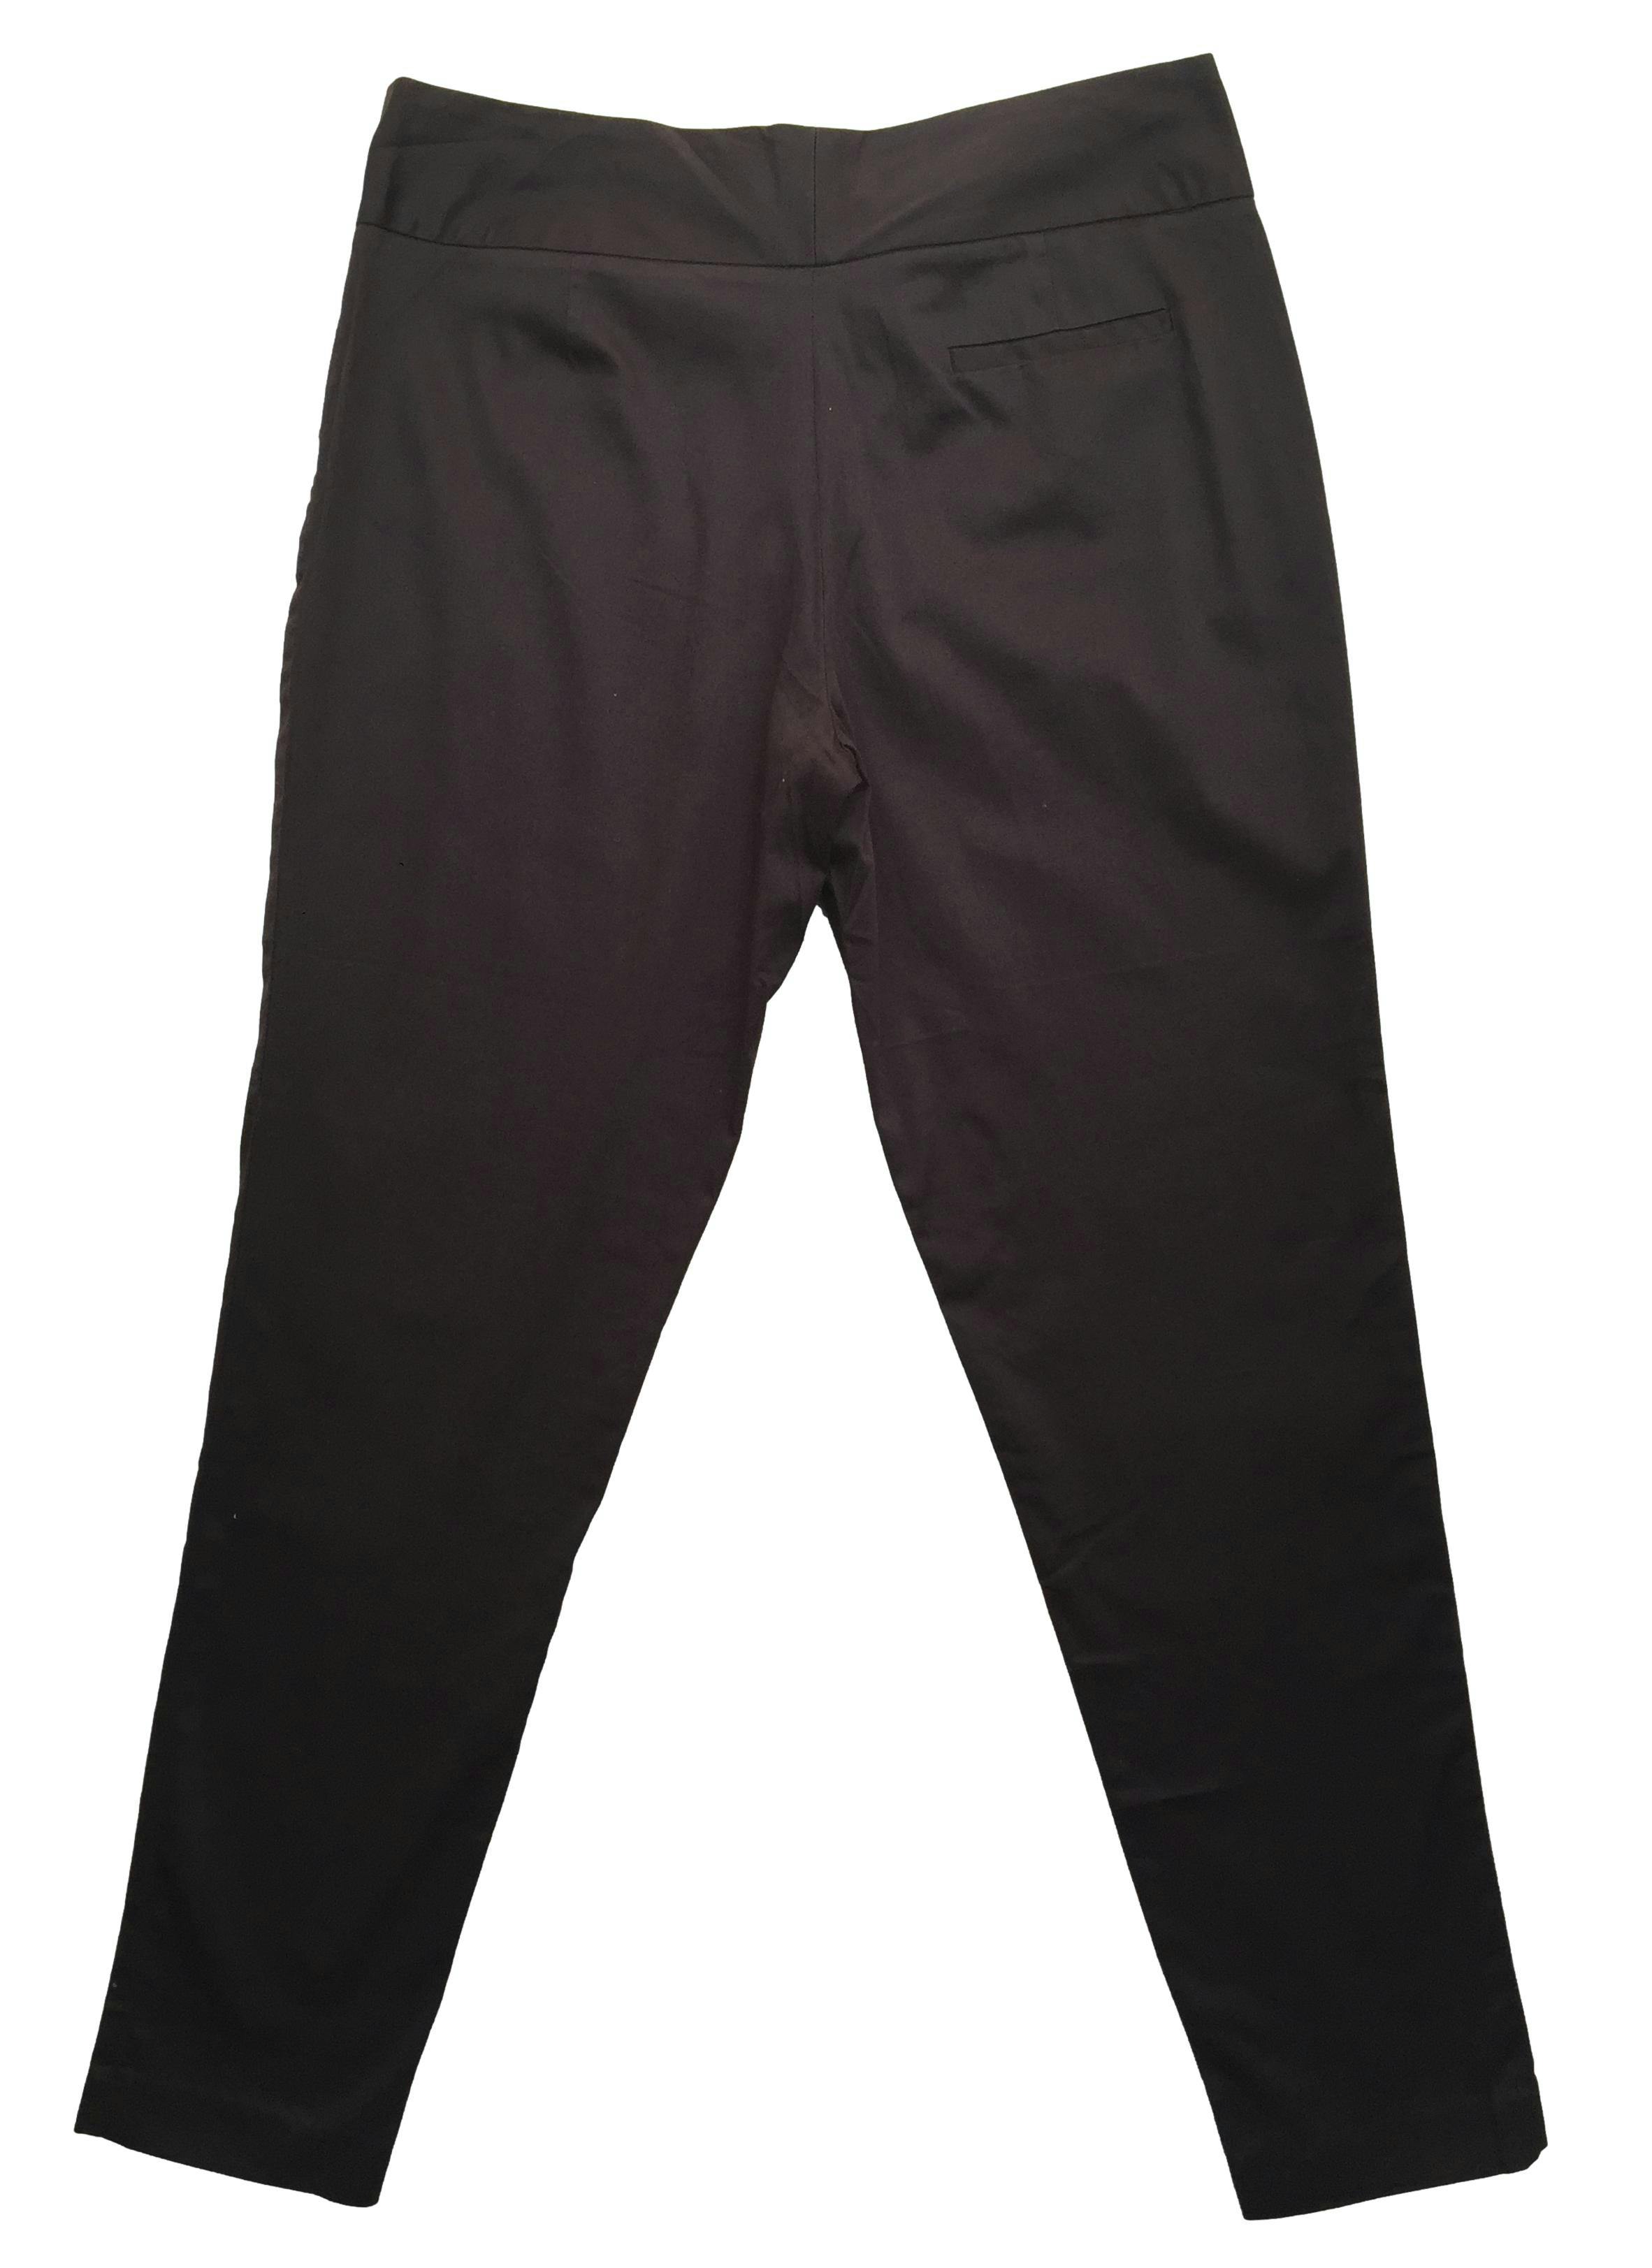 Pantalón marrón corte slim con dos botones en pretina. Cintura 76cm Tiro 24cm Largo 92cm